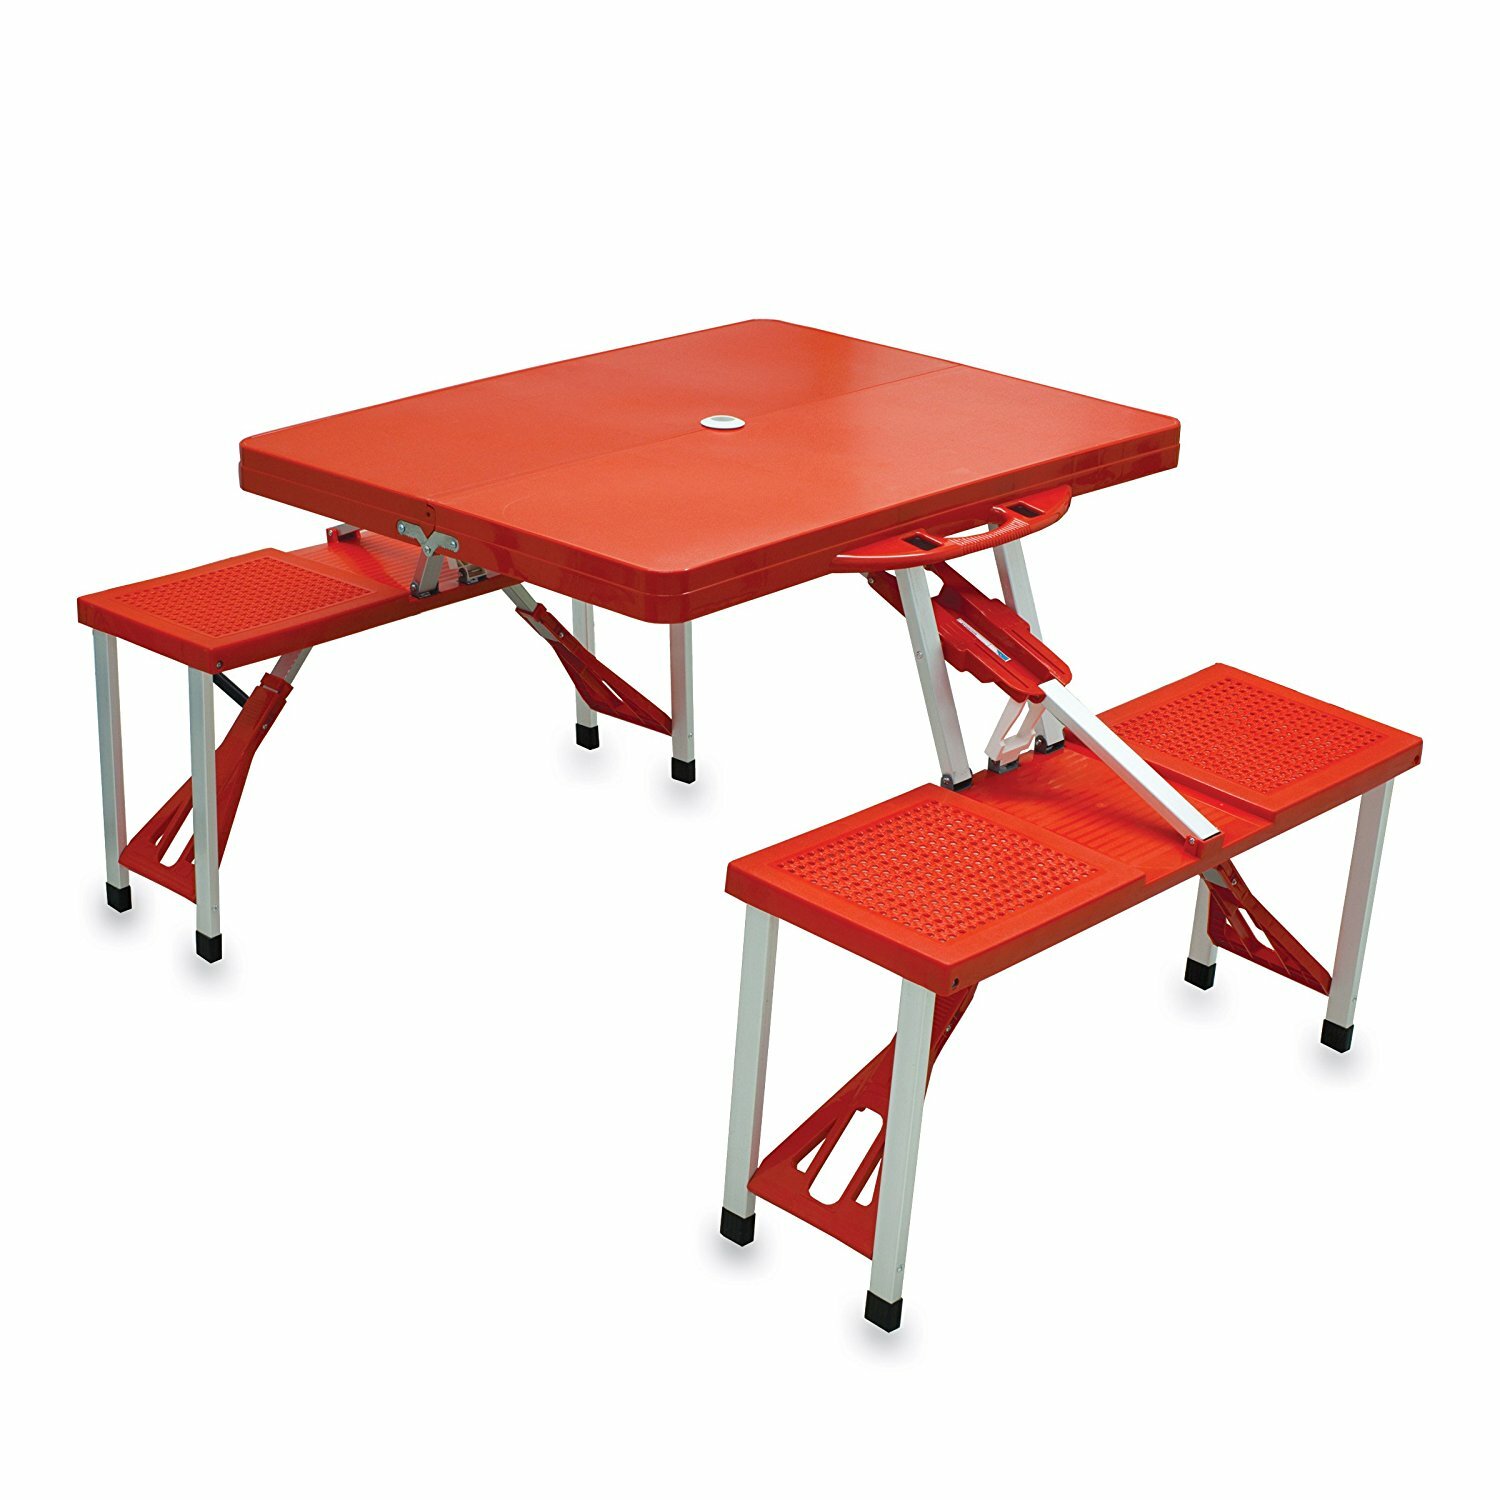 Costco Folding Tables for Unique Portable Table Design Ideas: Folding Tables Costco | Costco Utility Table | Costco Folding Tables